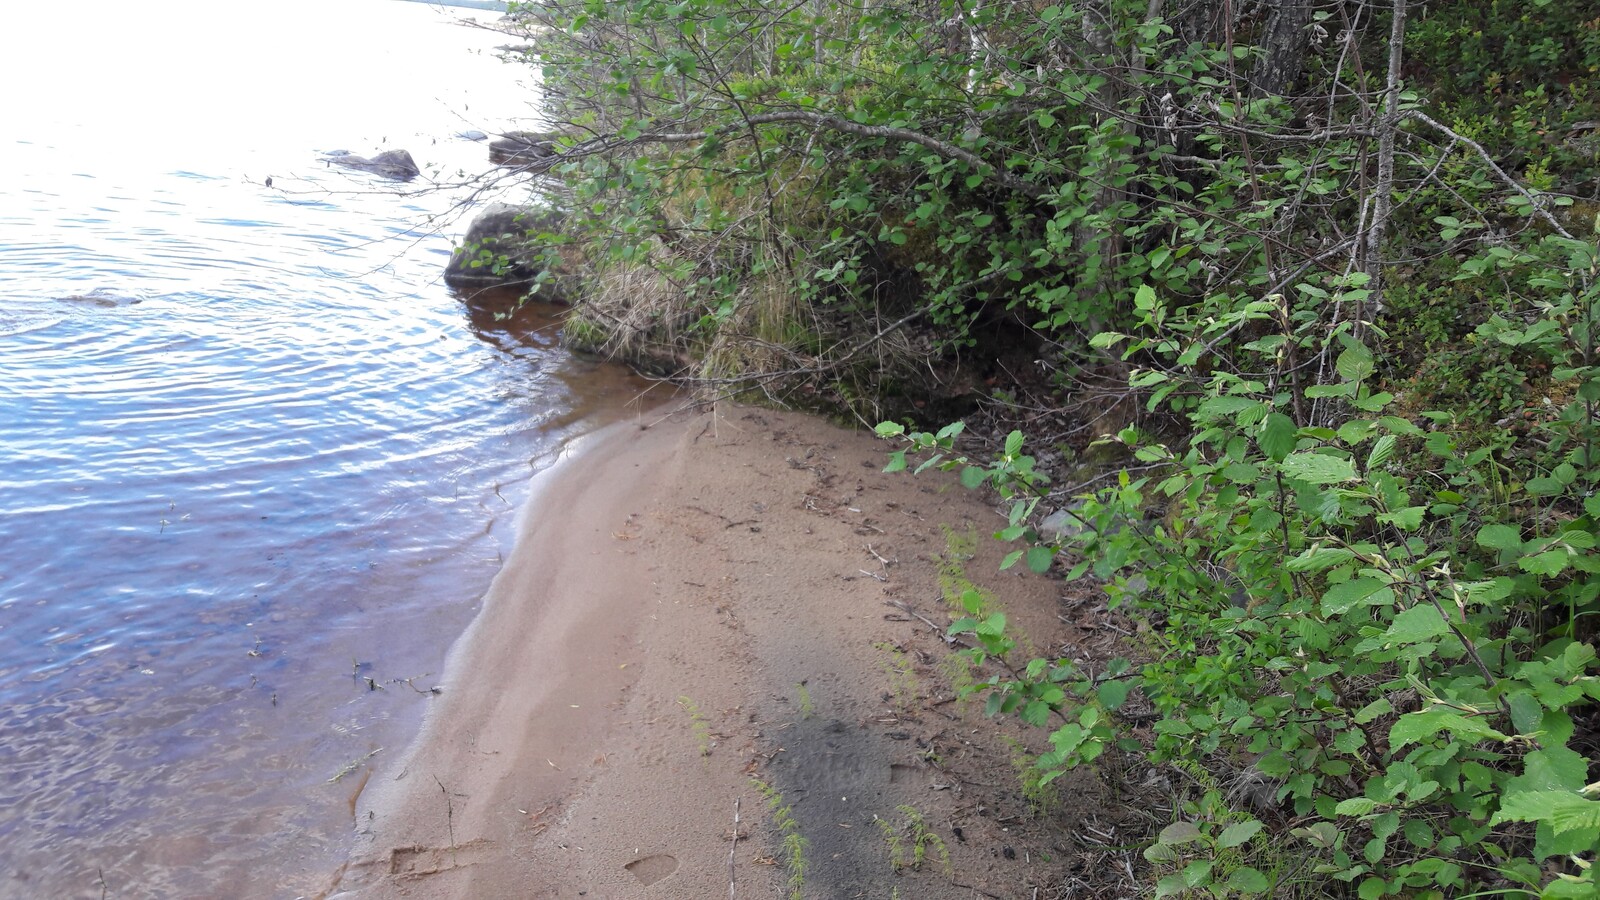 Hiekkarantaa reunustaa matala rantatörmä, jolla kasvaa lehtipuita. Rantavedessä on kiviä.